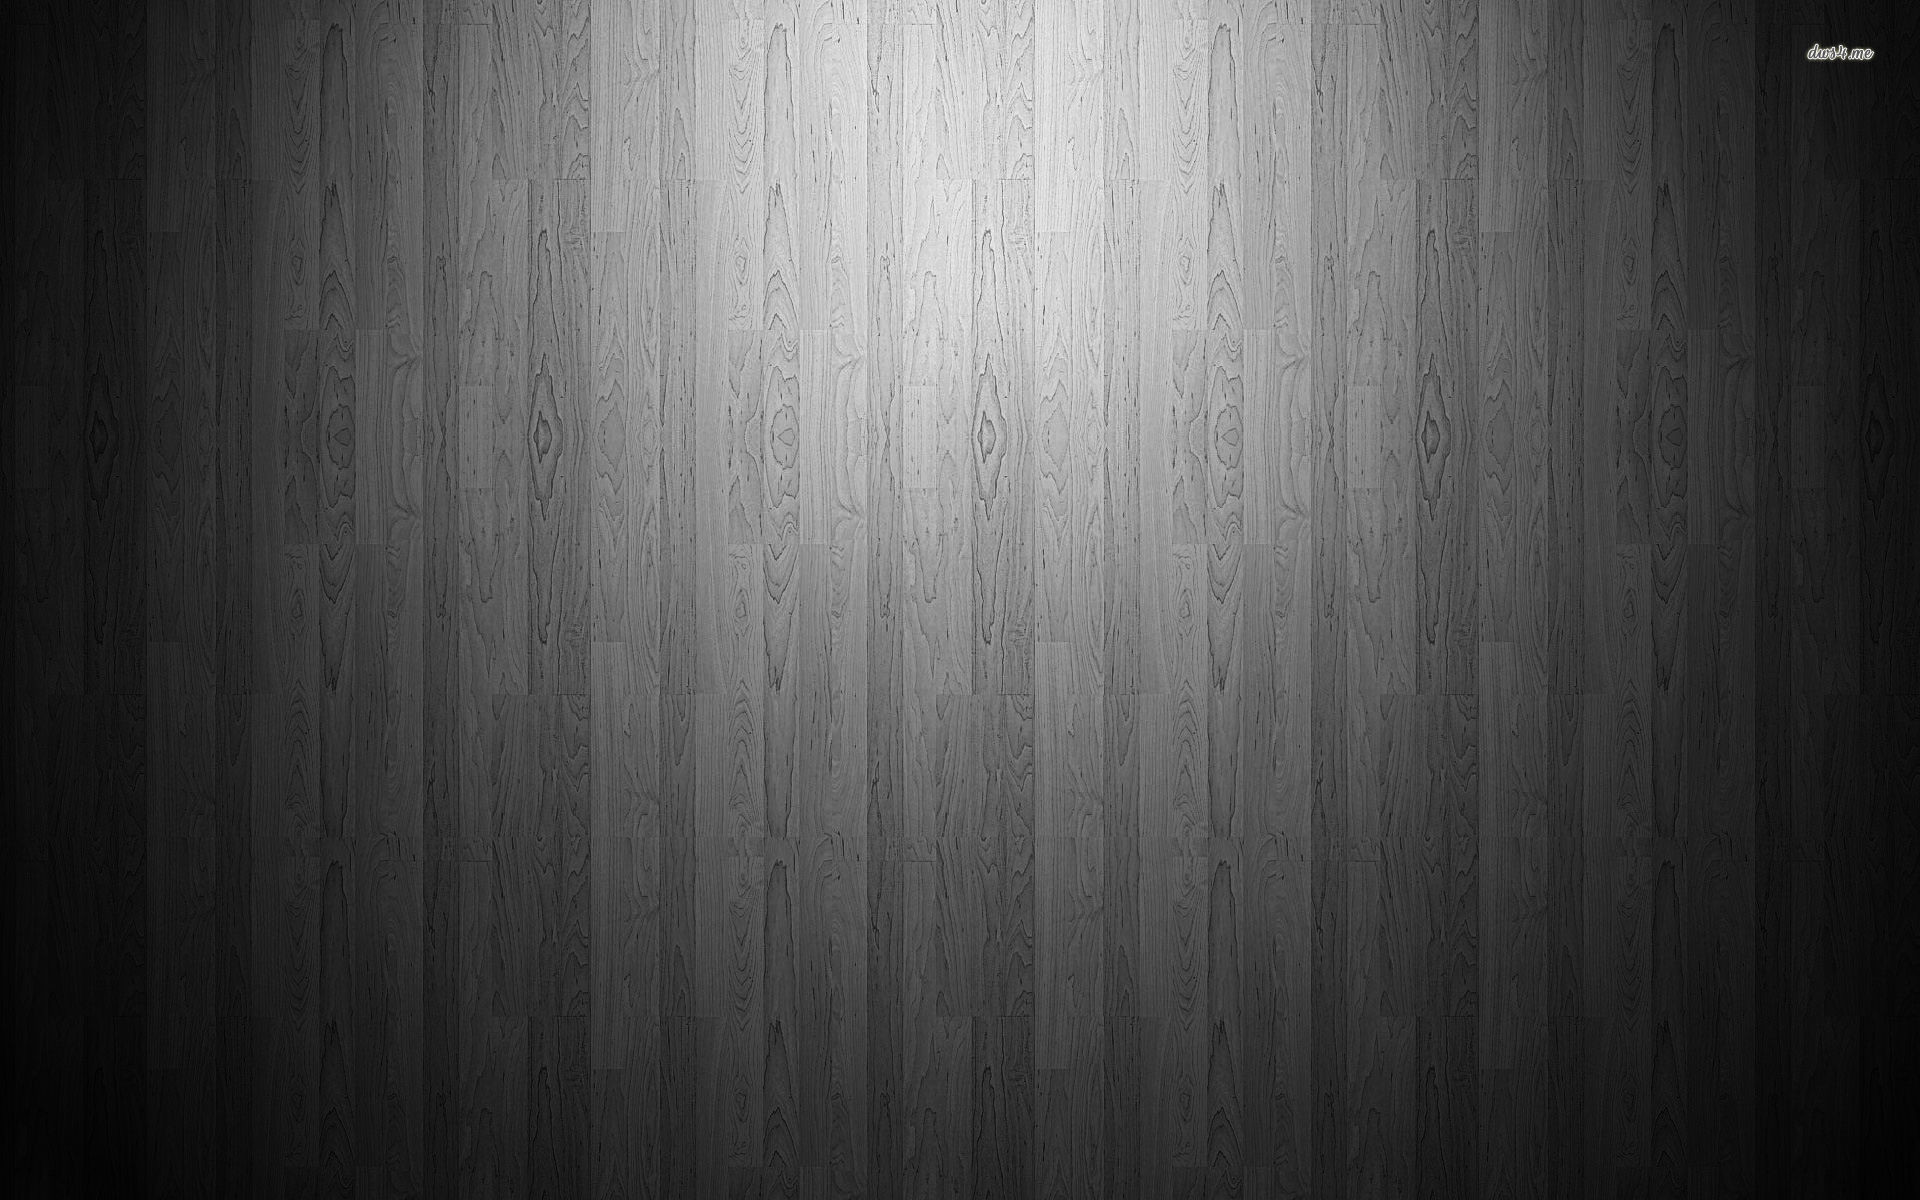 Hardwood Floor Wallpaper 48 Images